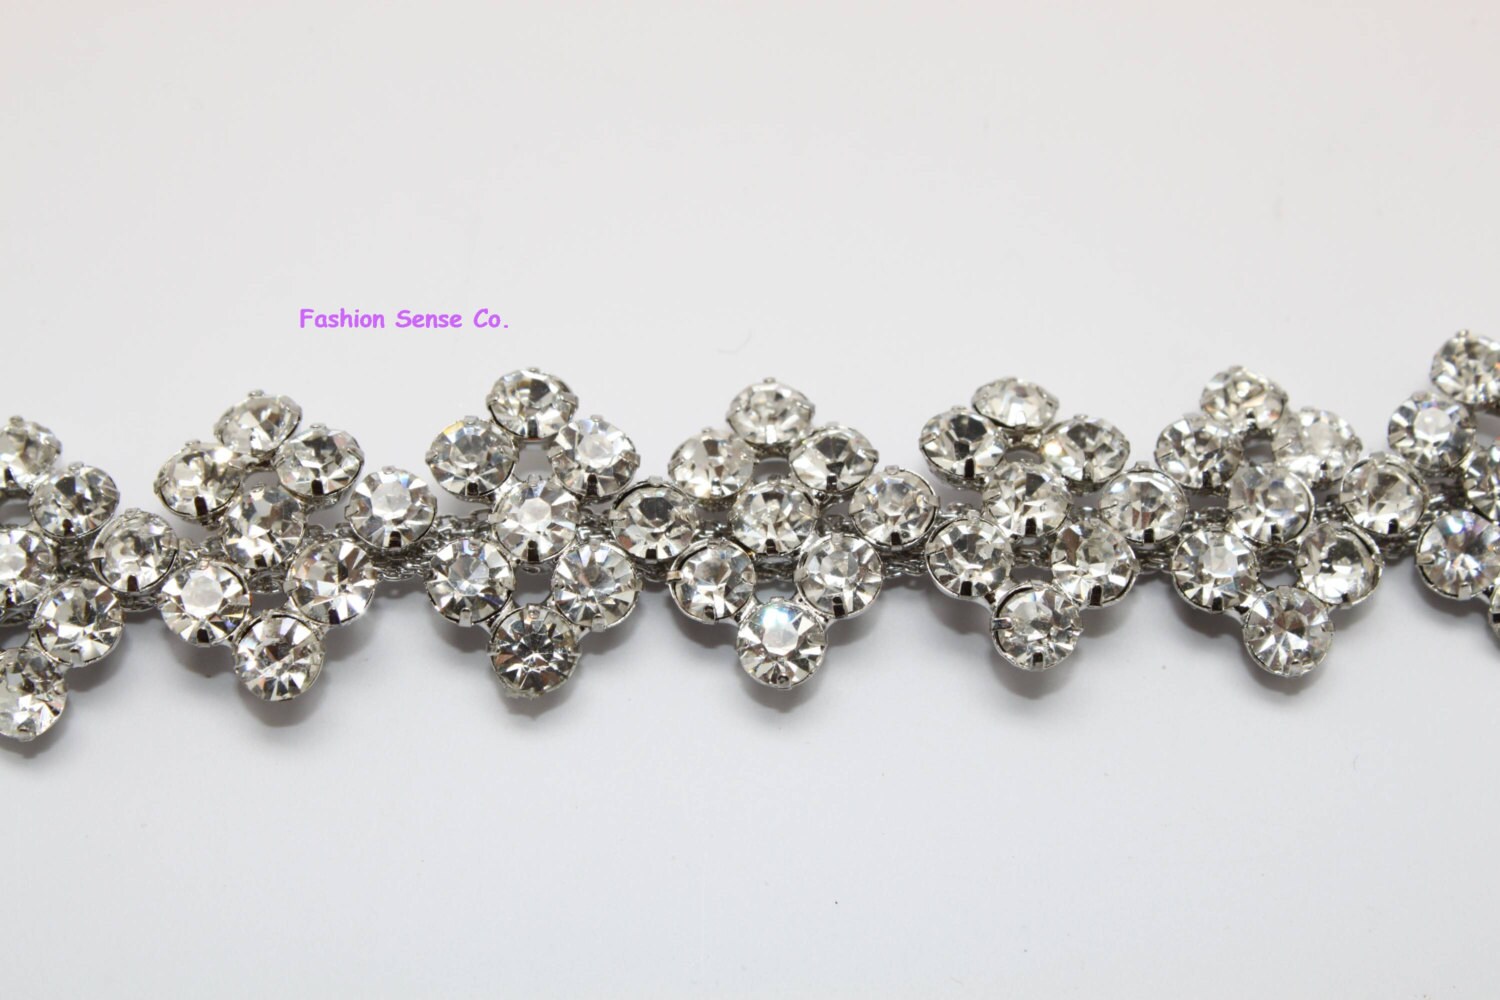 LG-483 wedding cake trim diamante rhinestone crystal silver | Etsy